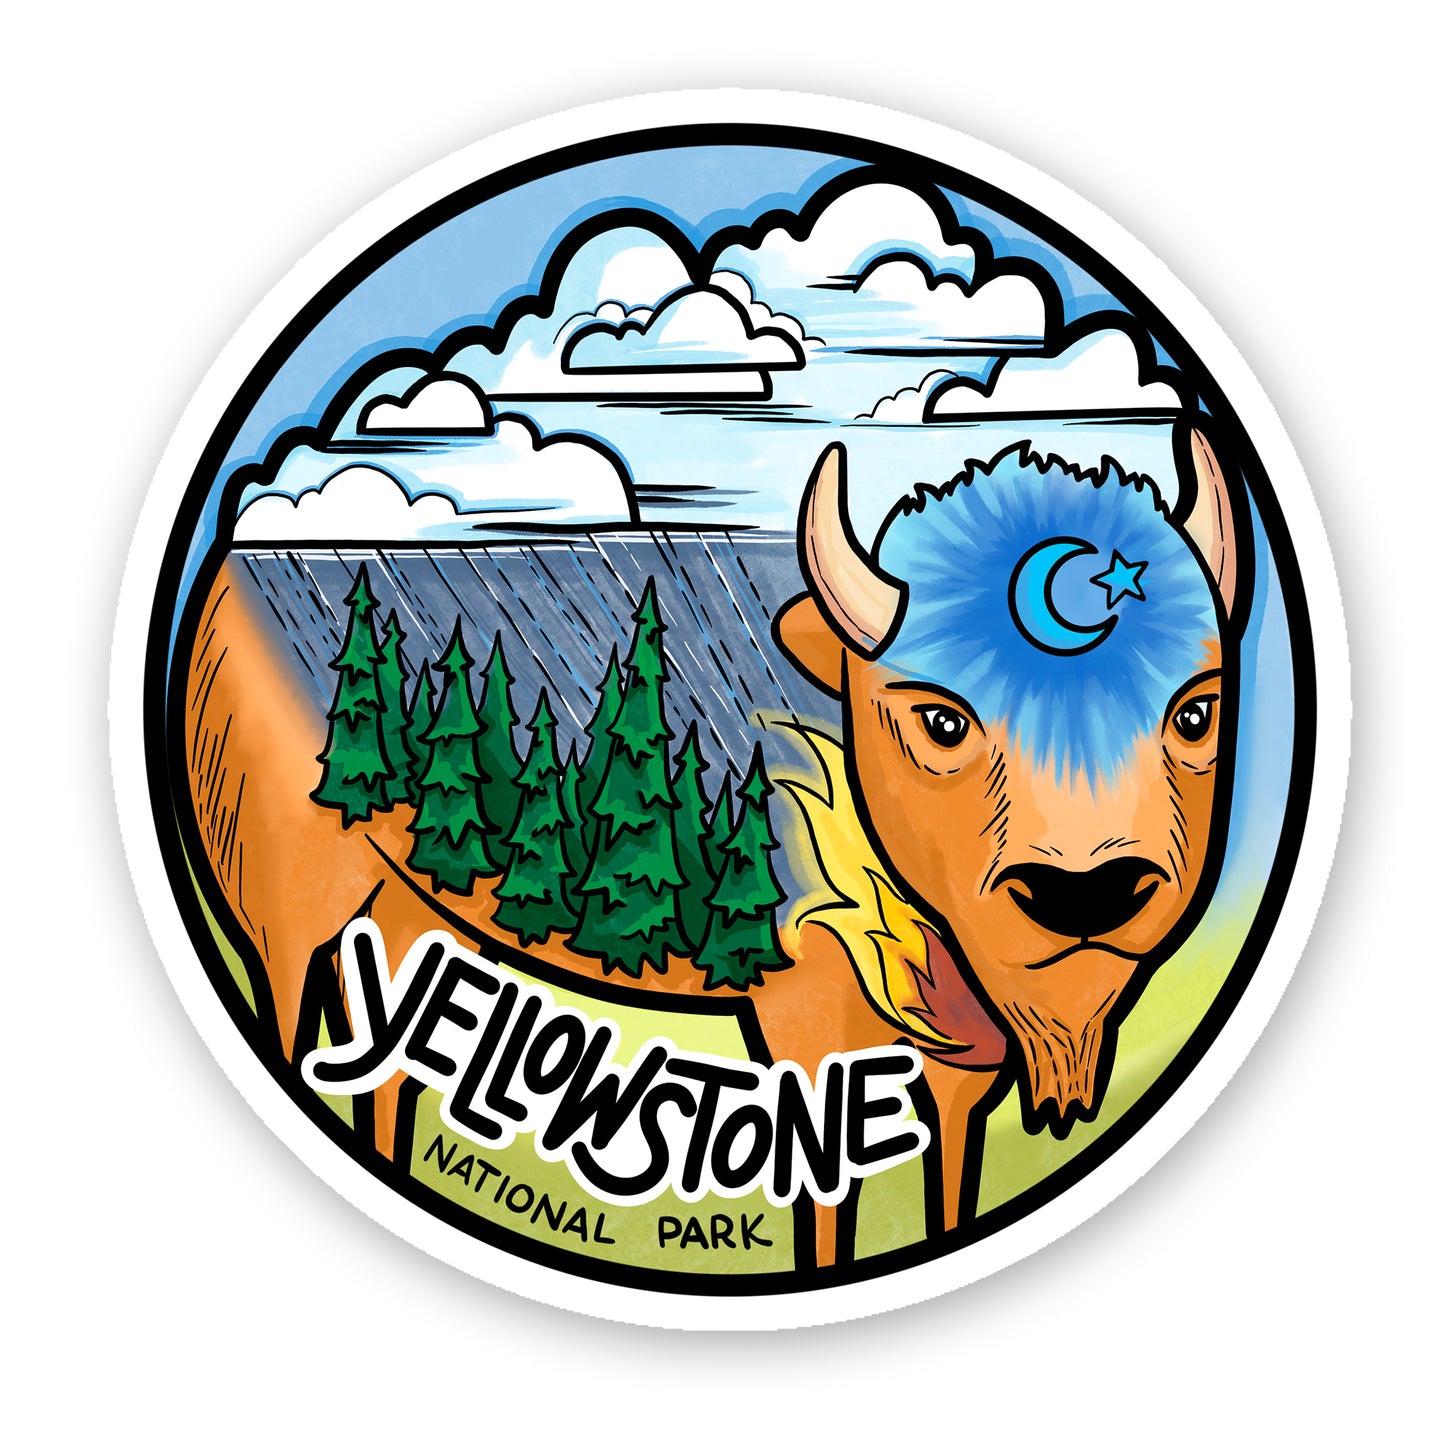 Yellowstone Bison sticker